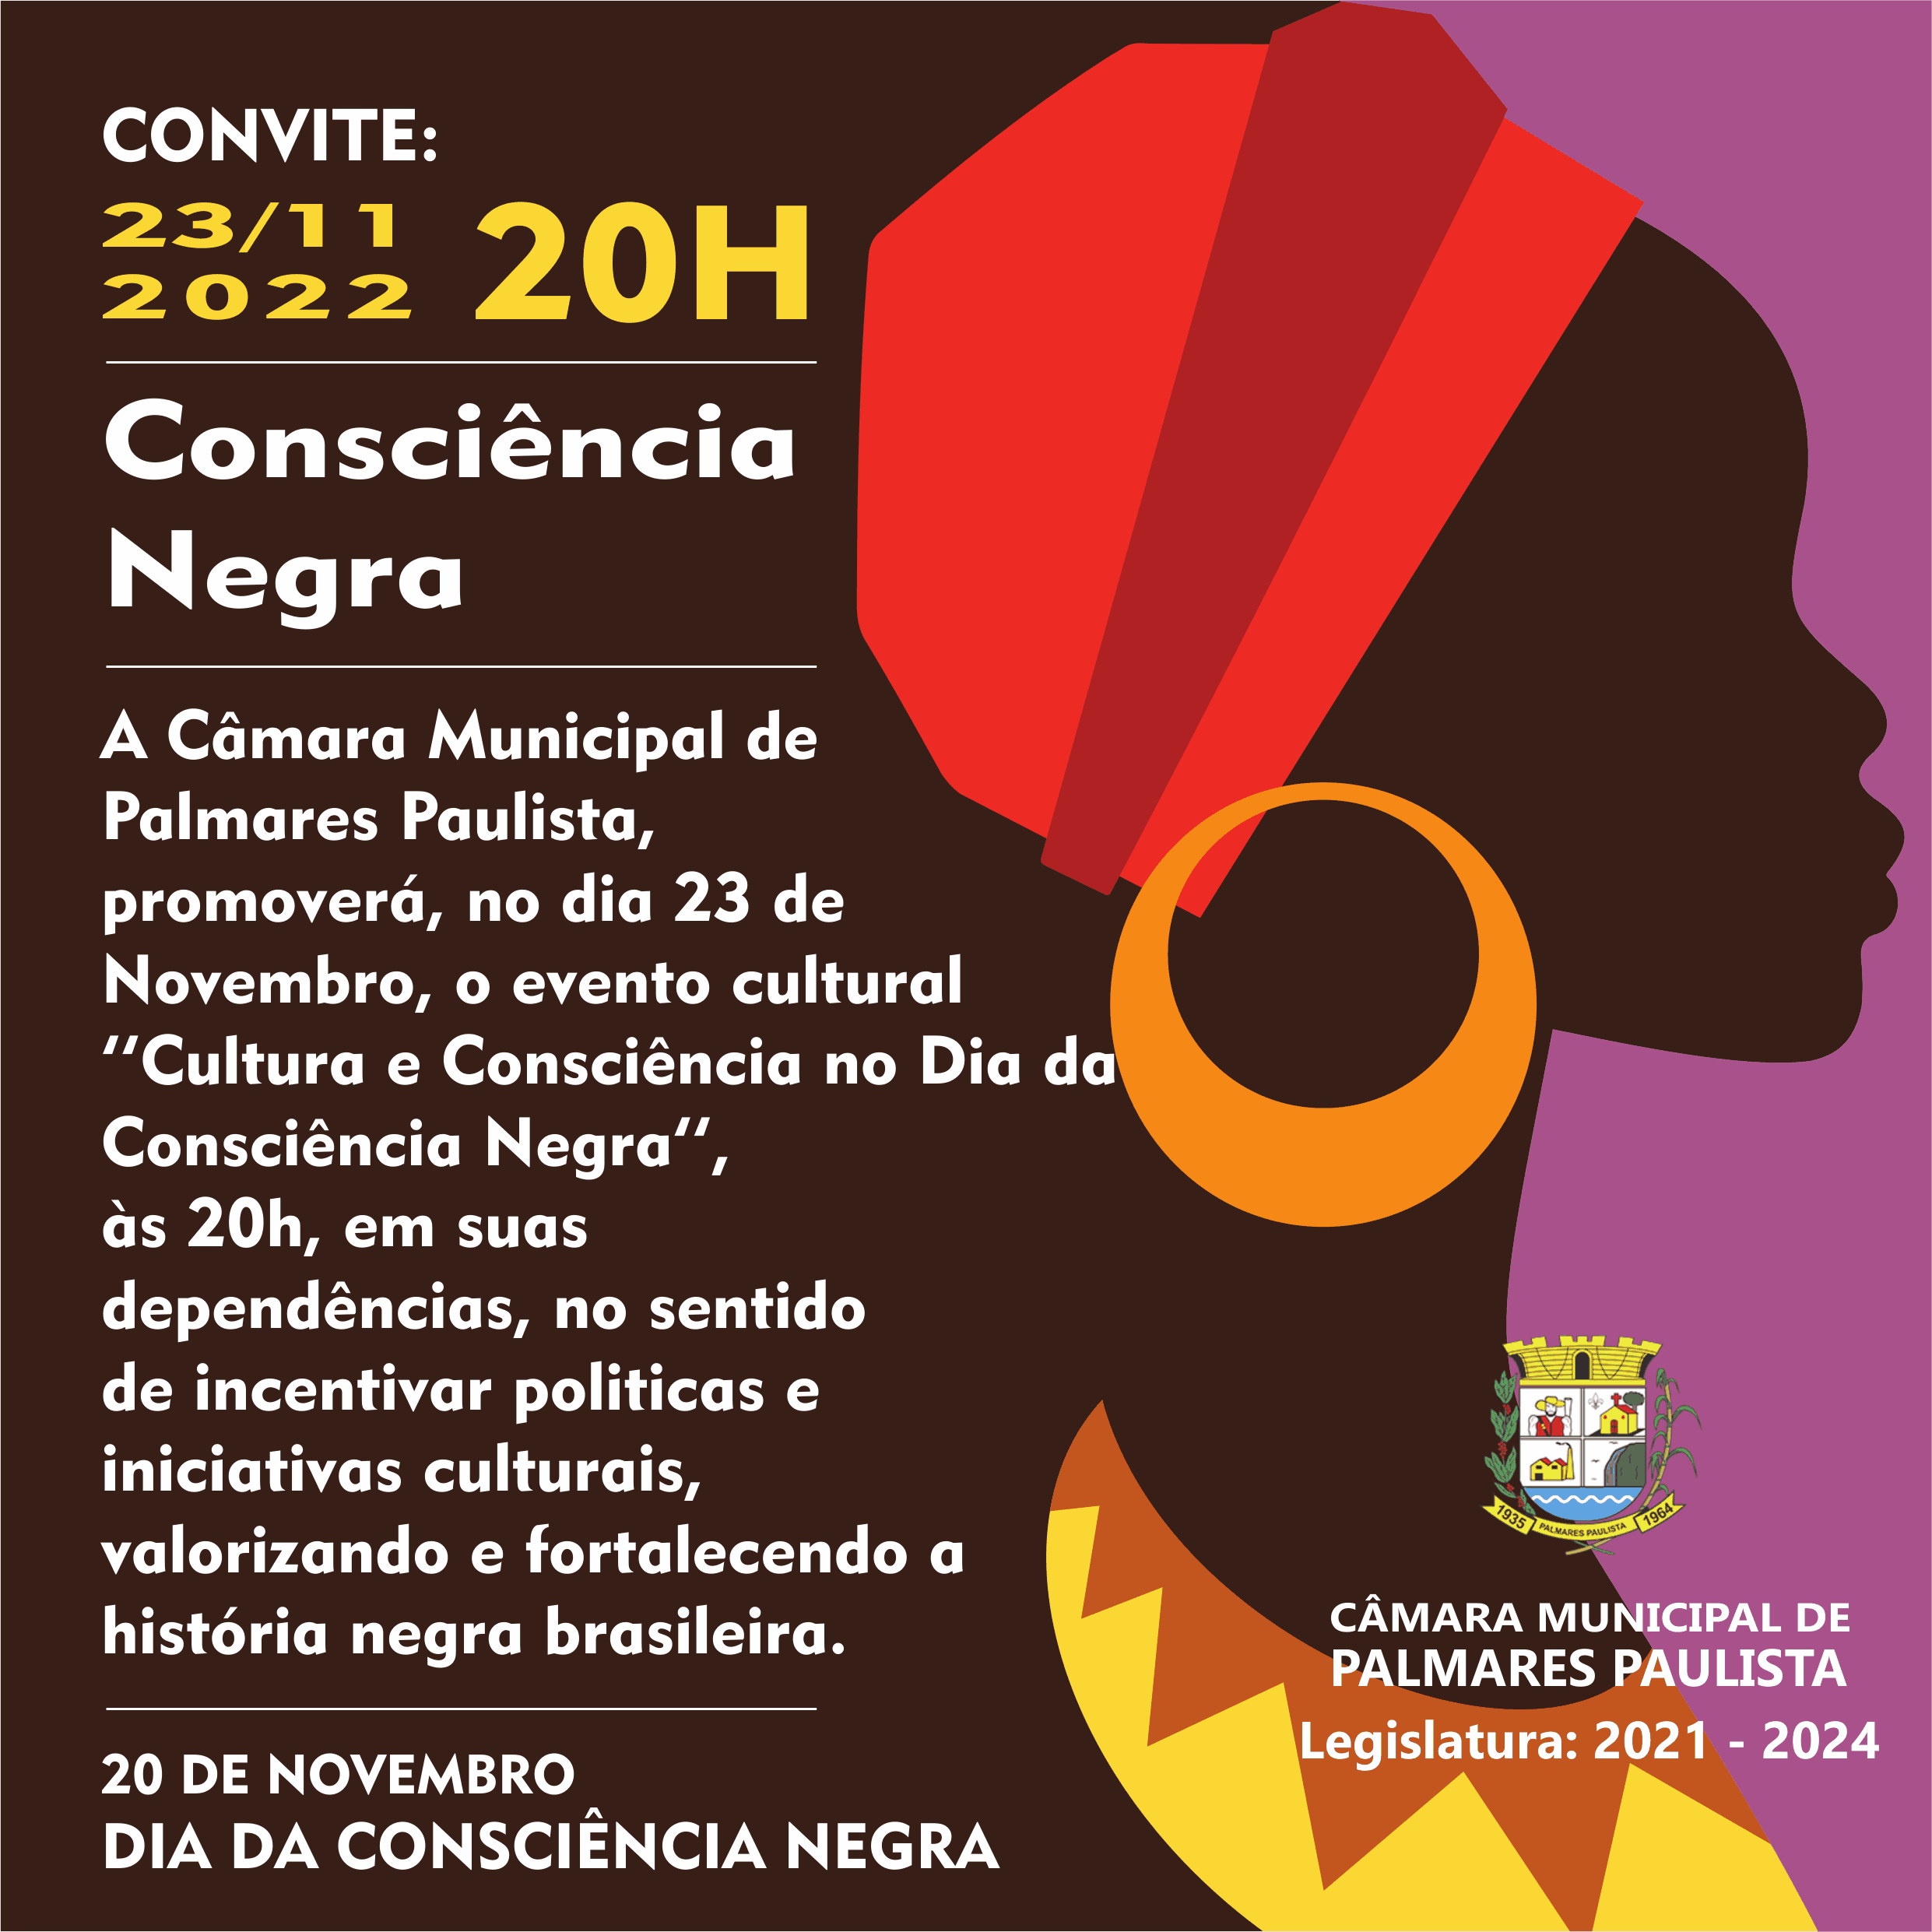 A Câmara Municipal de Palmares Paulista, promoverá, no dia 23 de Novembro, o evento cultural - Cultura e Conciência no Dia da Conciência Negra, às 20h